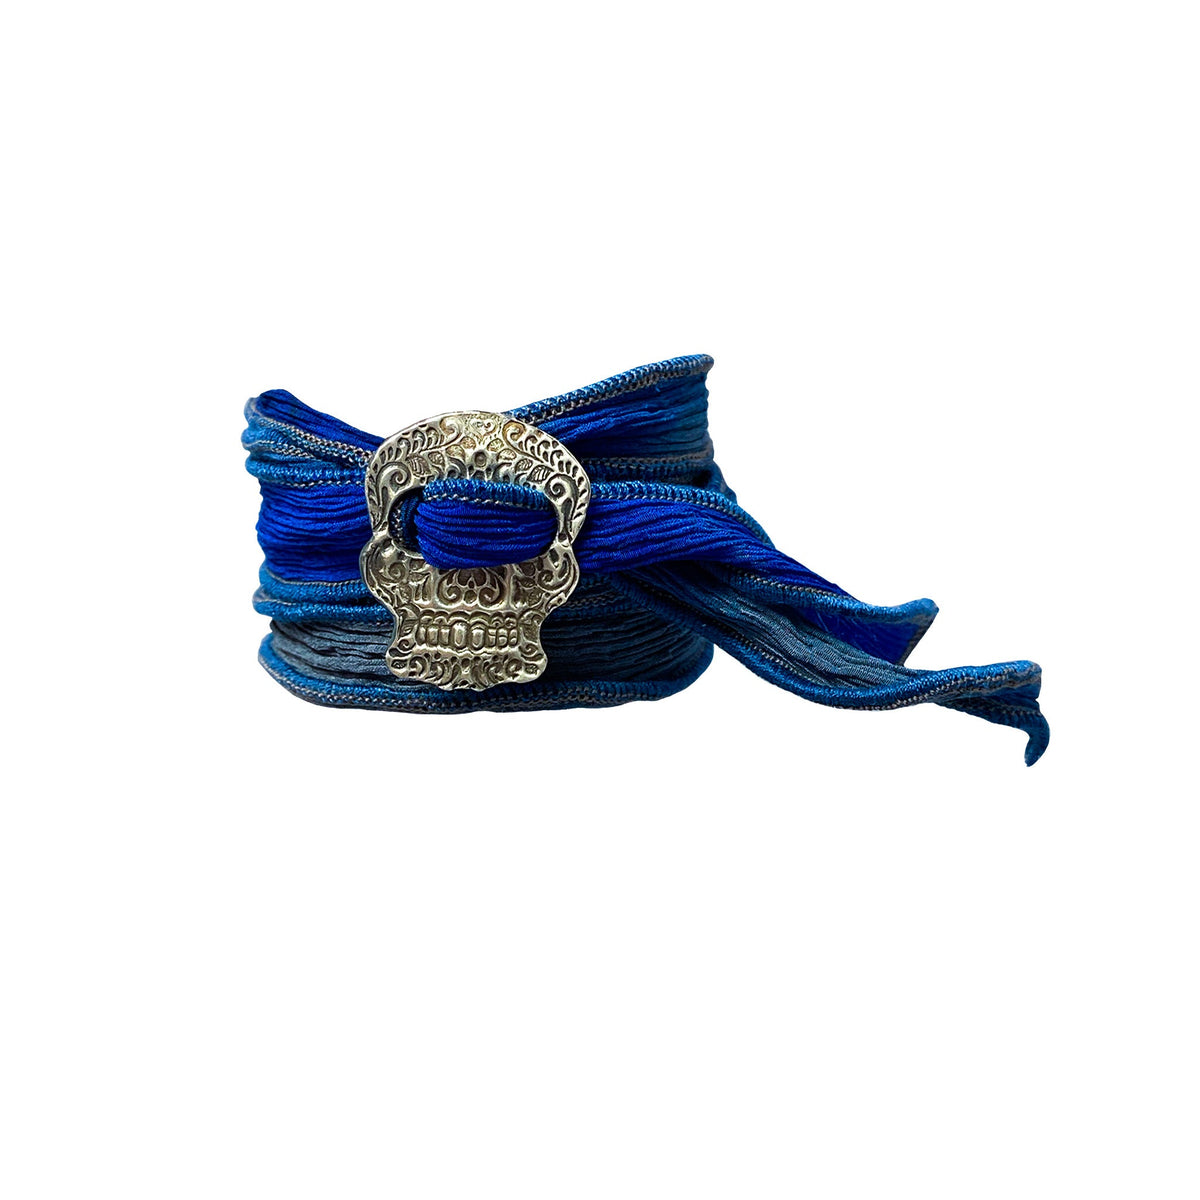 Caravana Jewelry Silk Wrap Bracelet